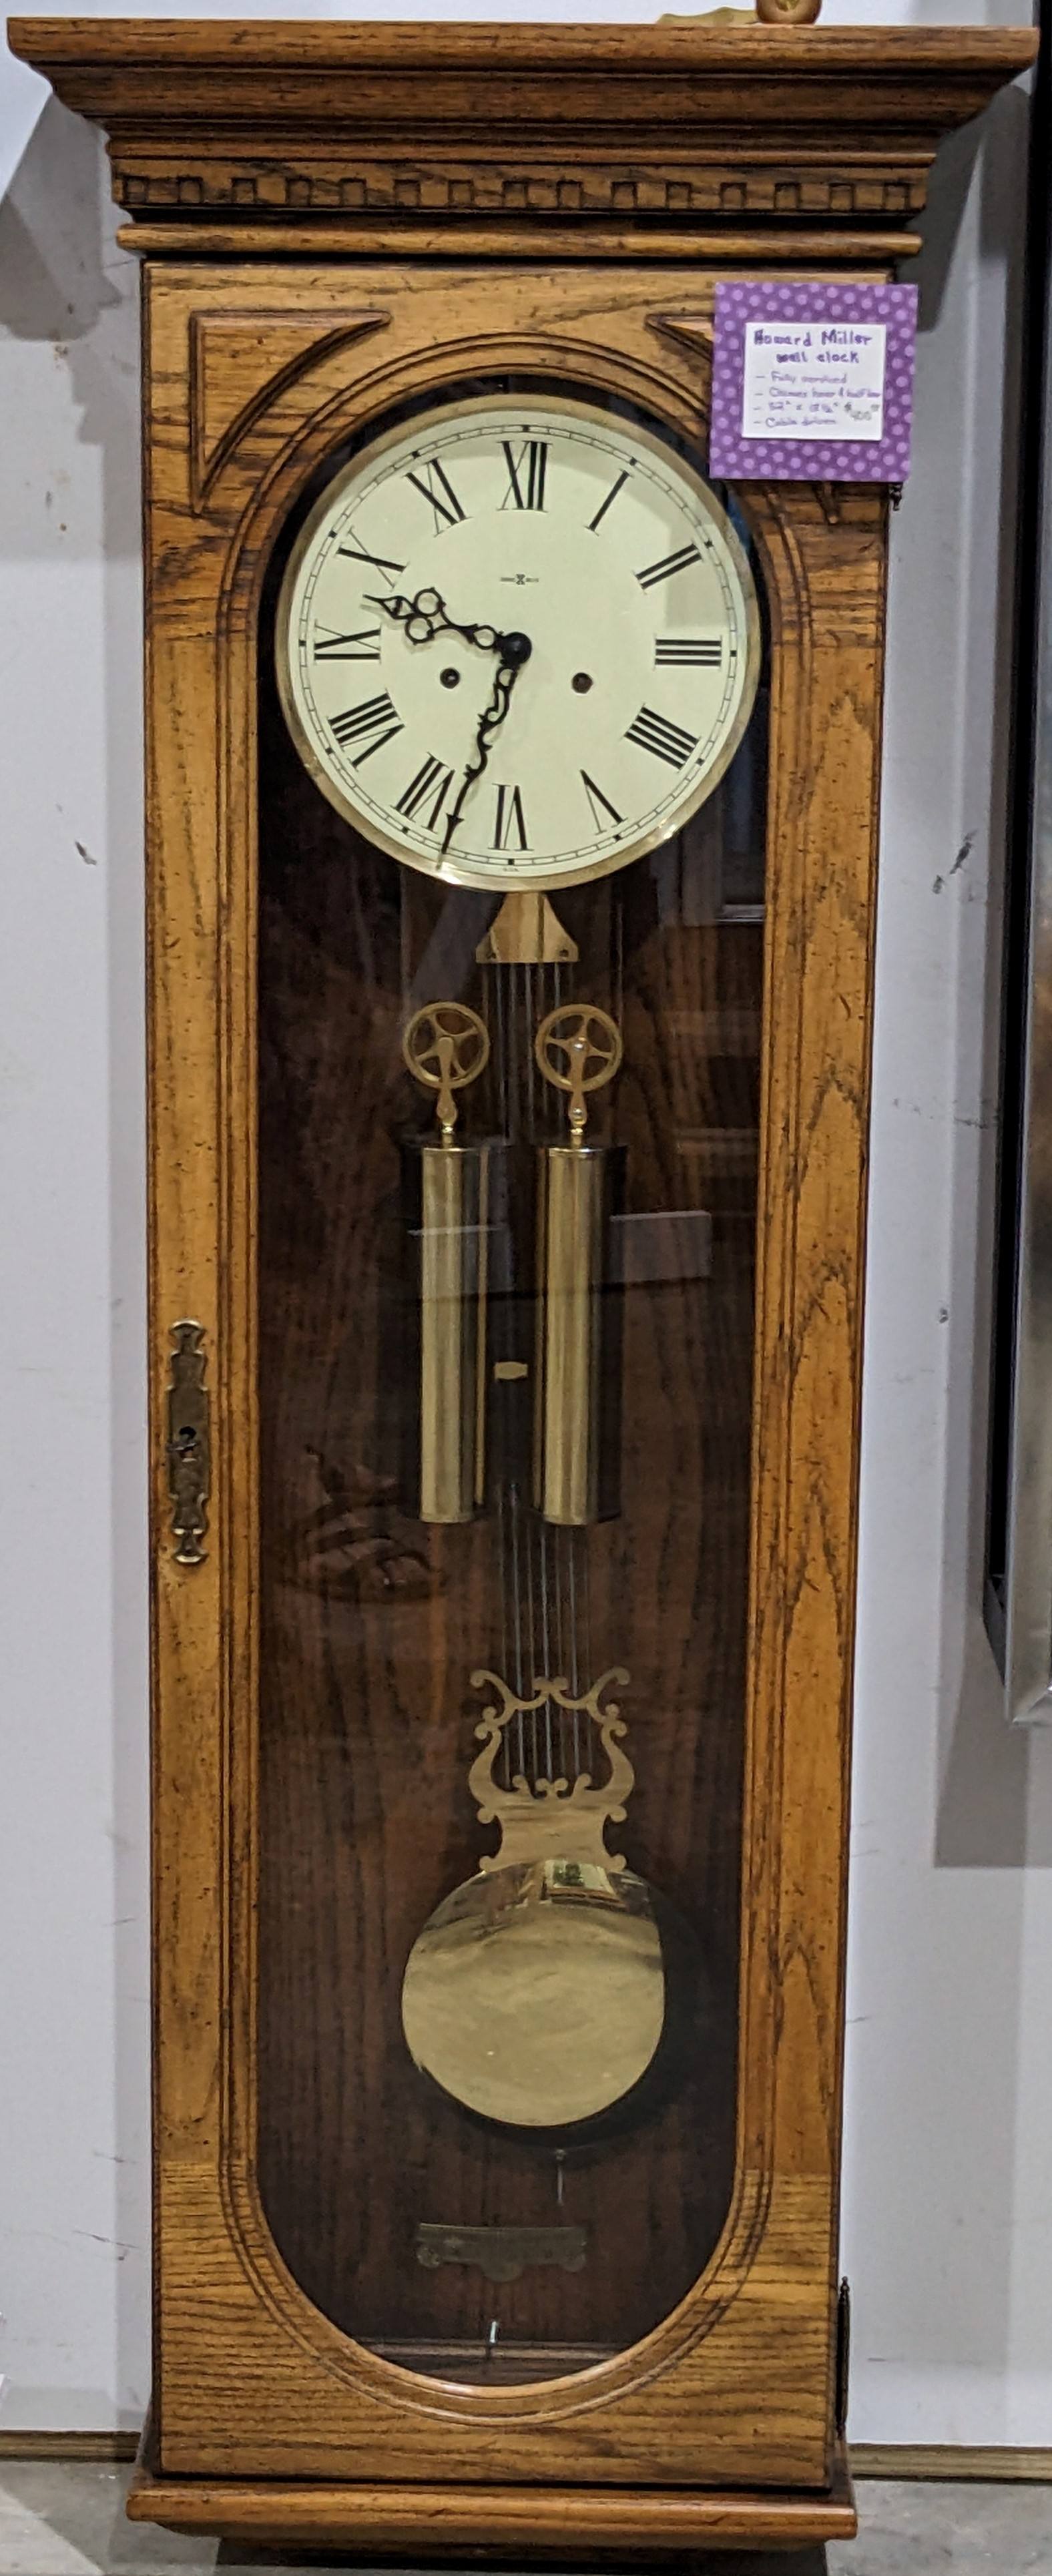 Howard Miller wall clock — $400